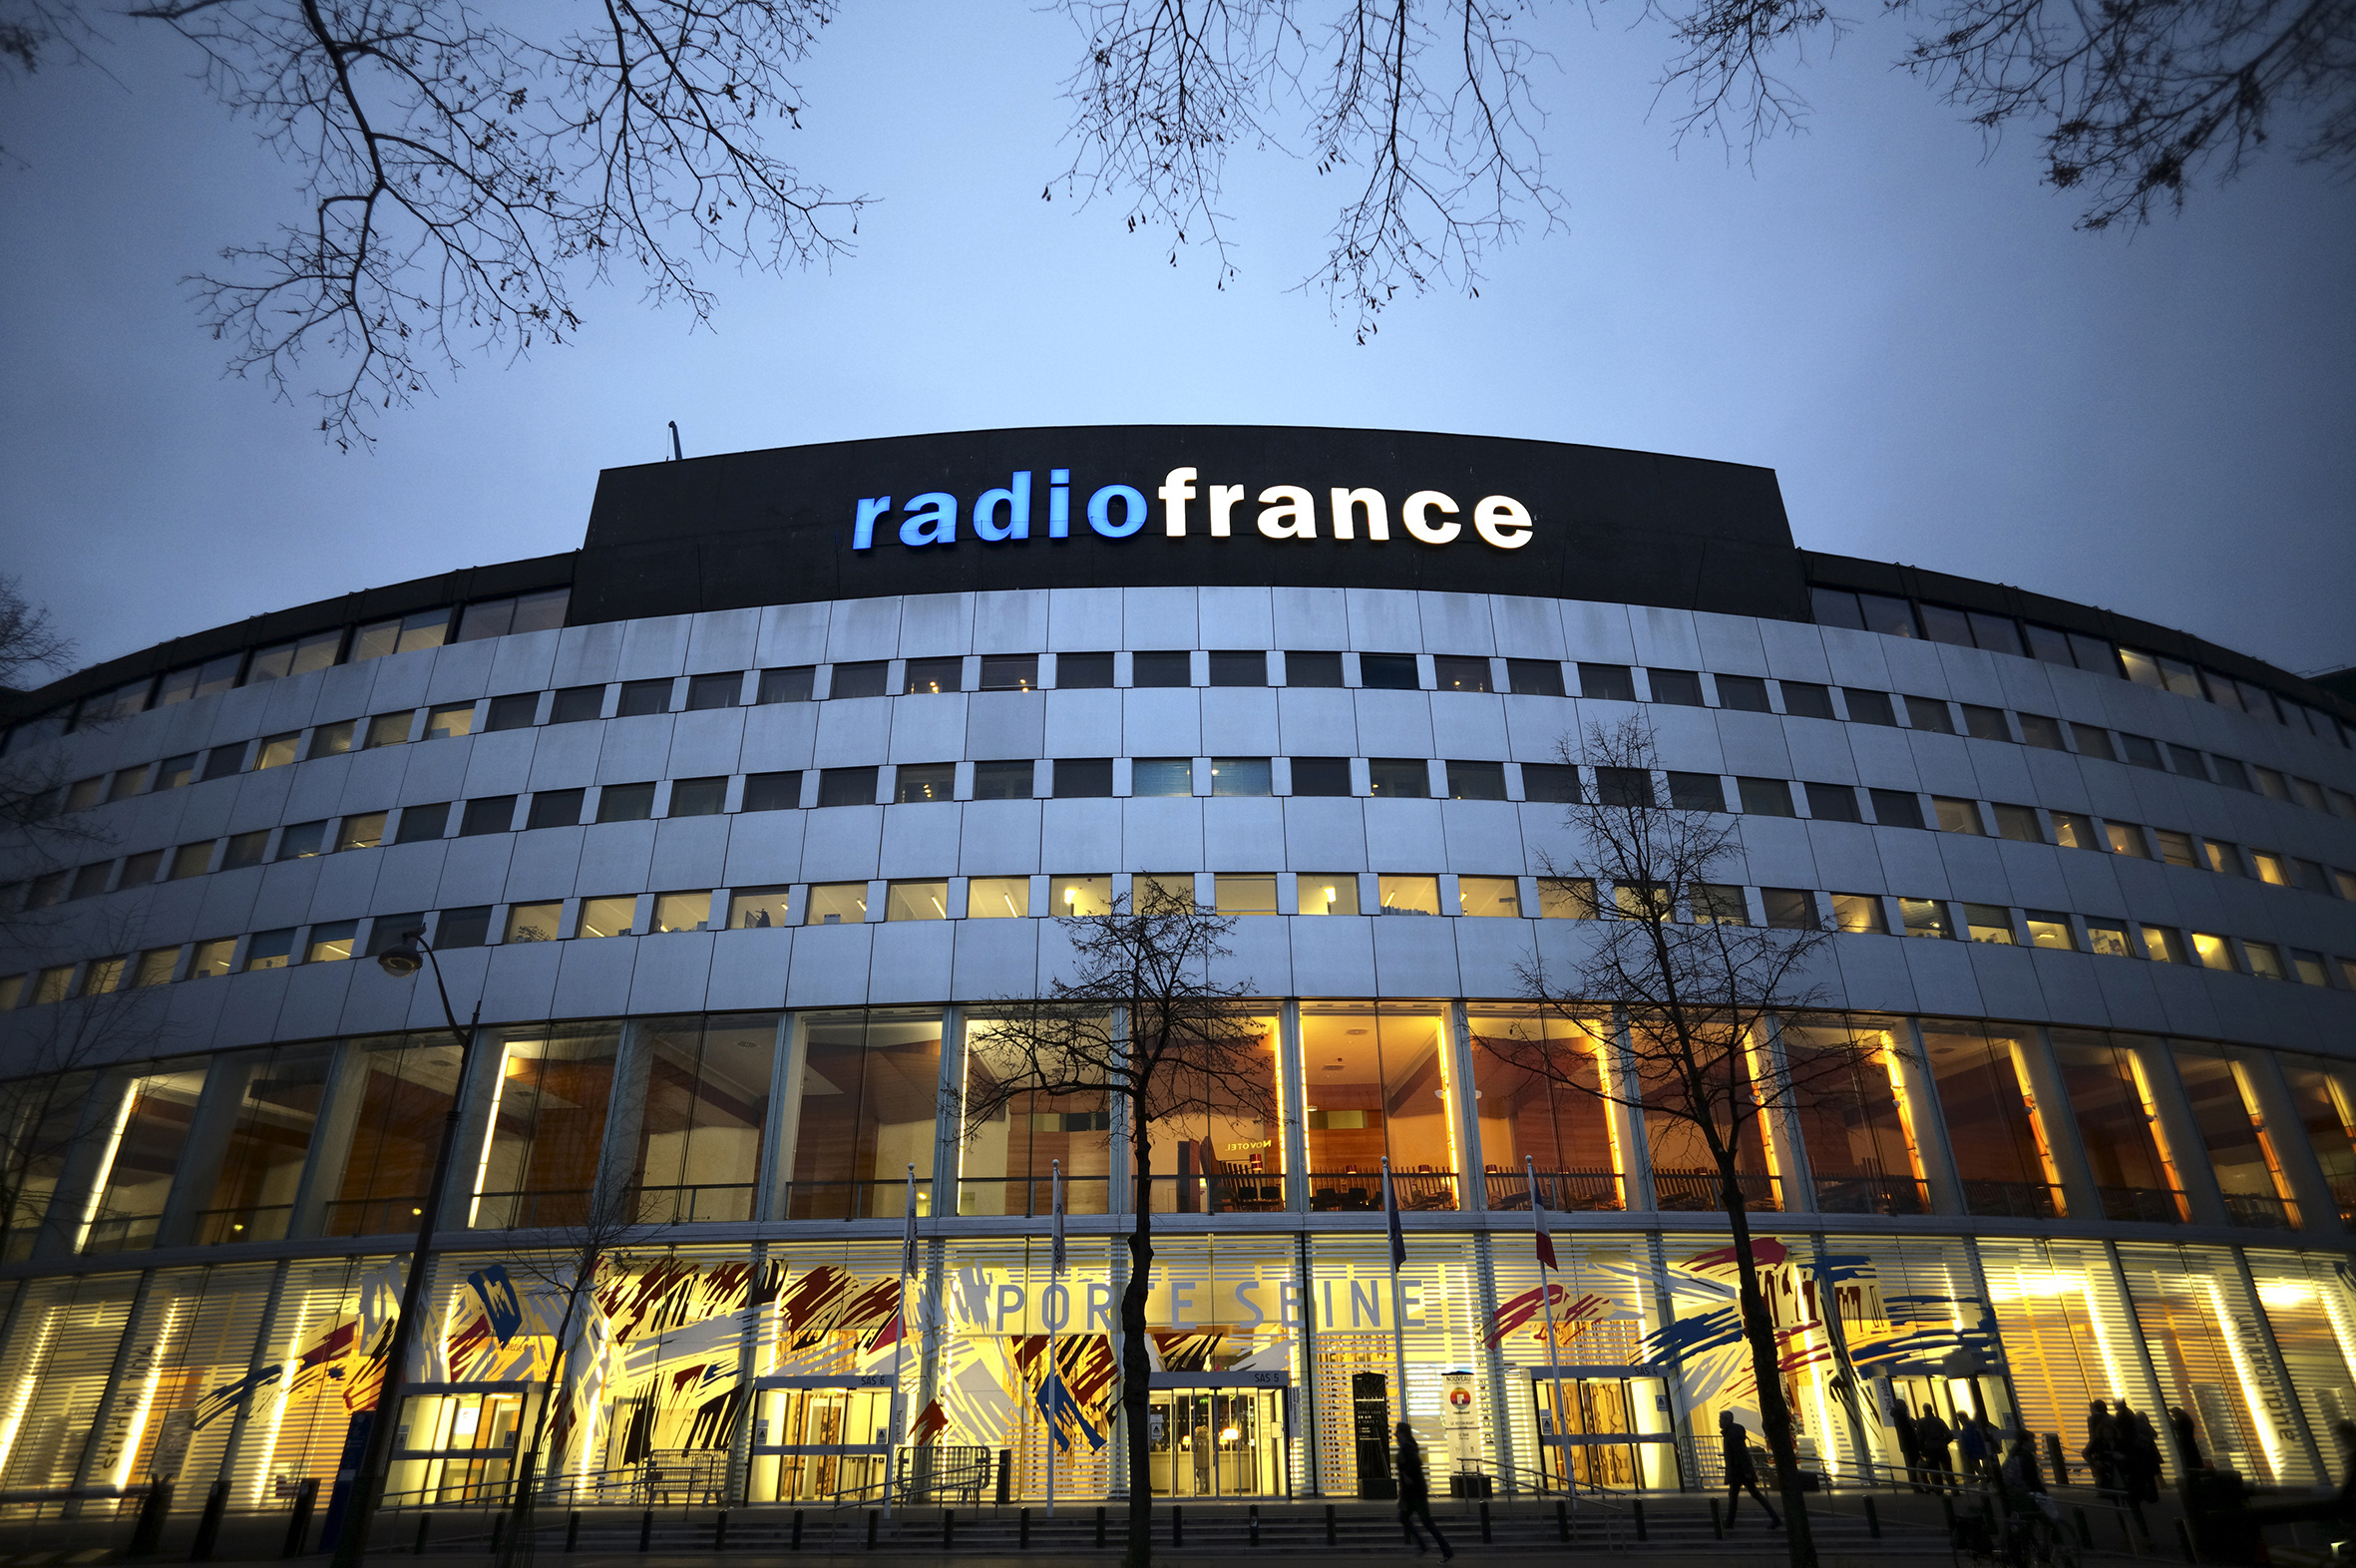 Maison radio france